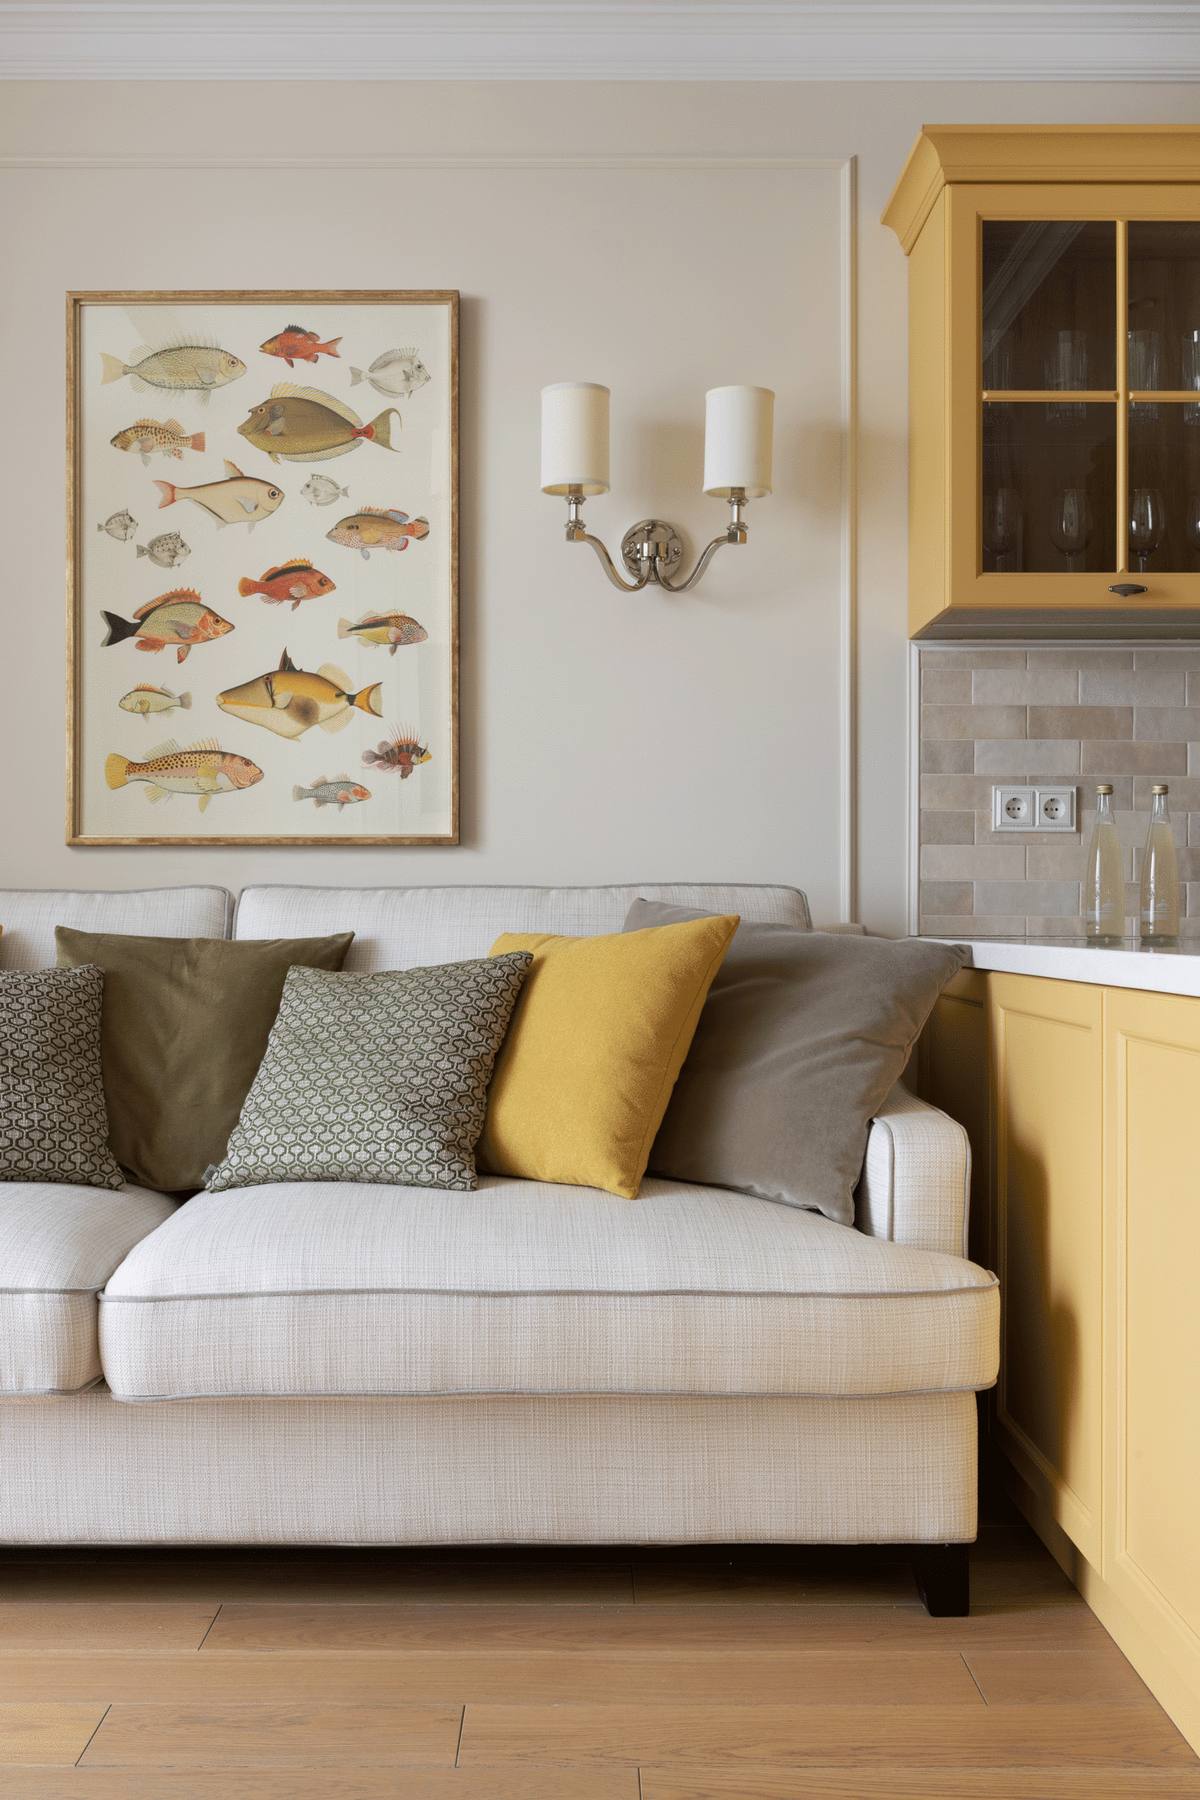 Bức tường phía sau sofa được trang trí bằng khung hình đủ loại cá - chủ đề này trông rất độc đáo và thú vị. Hai bên là đèn gắn tường đối xứng cân đối, hài hòa.